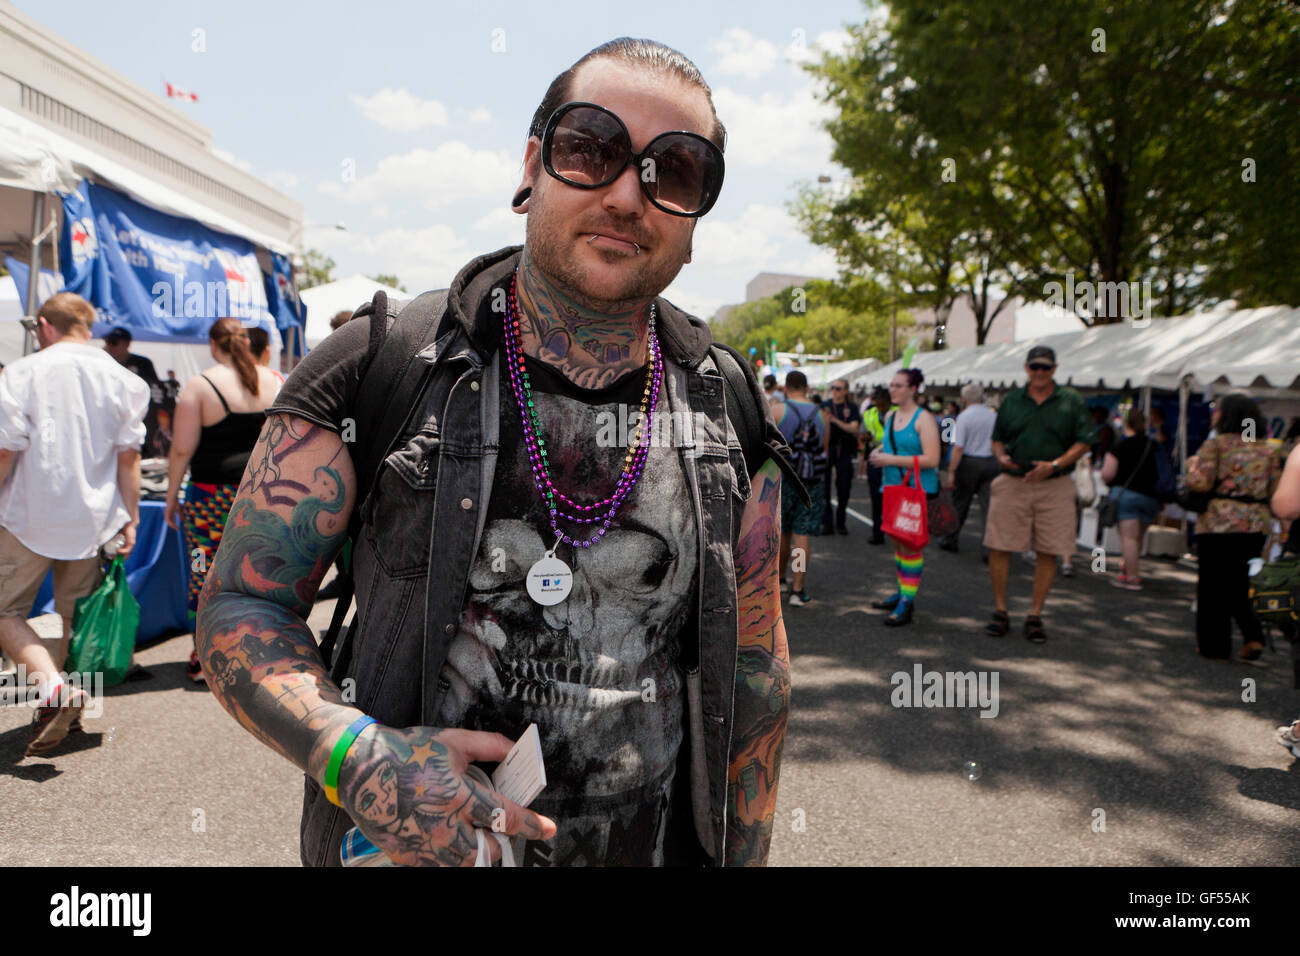 Mann mit vielen Tattoos zu einem Outdoor Event - USA Stockfoto